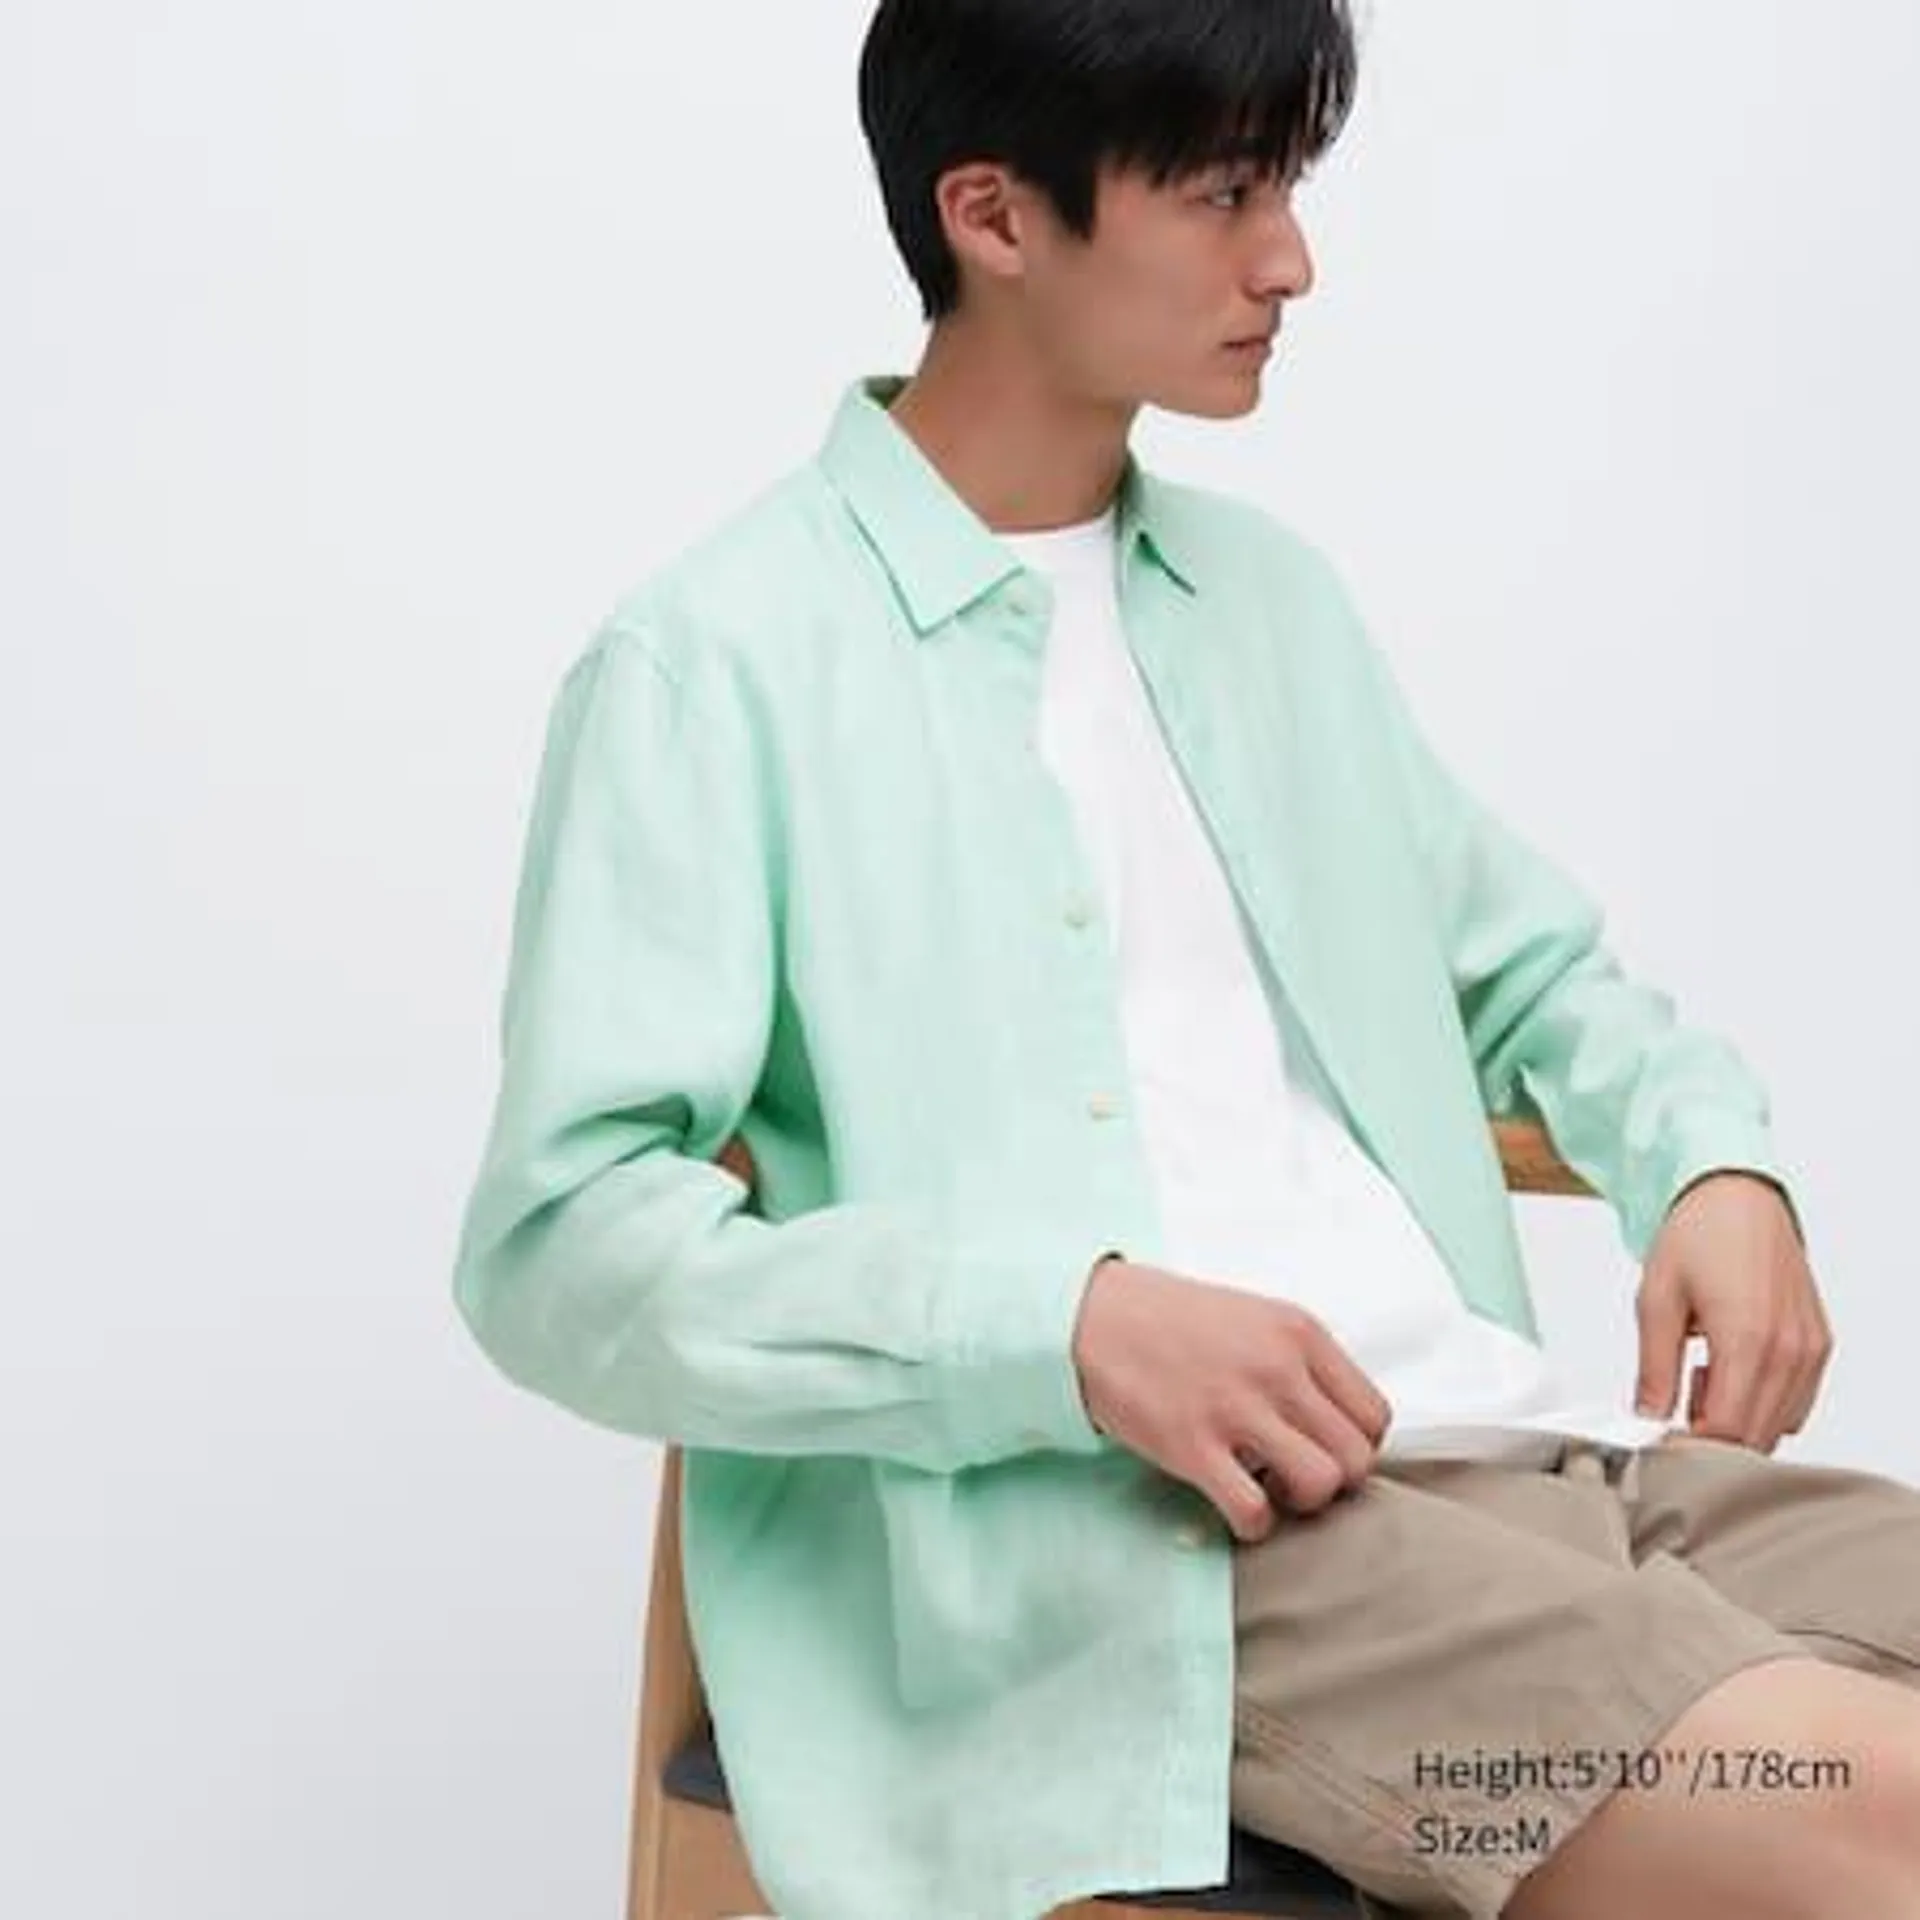 100% Premium Linen Regular Fit Shirt (Regular Collar)